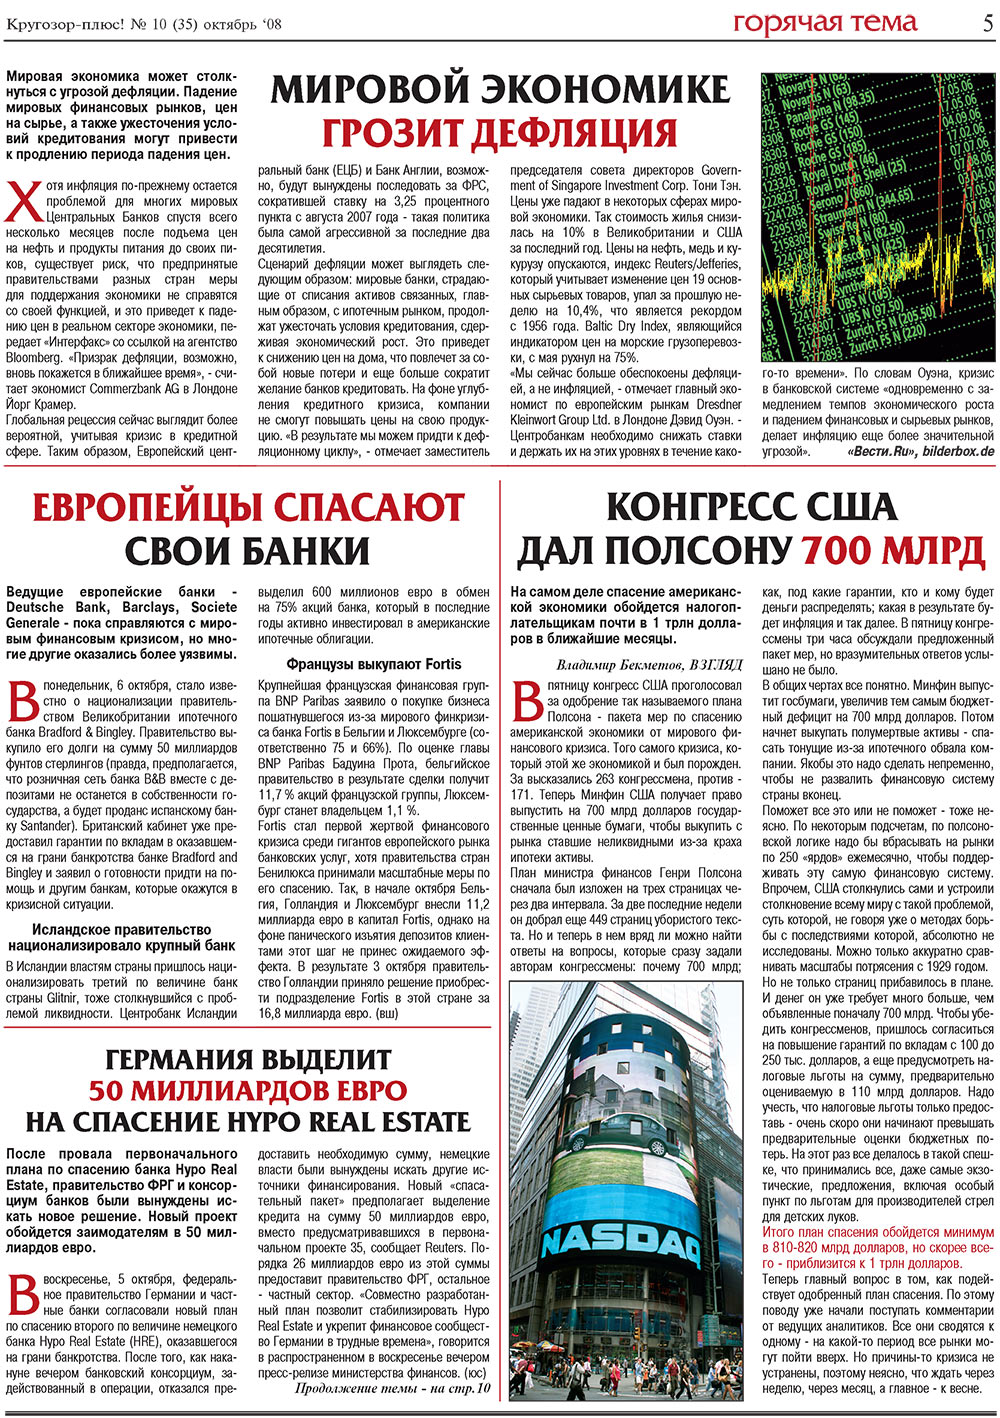 Кругозор плюс!, газета. 2008 №10 стр.5